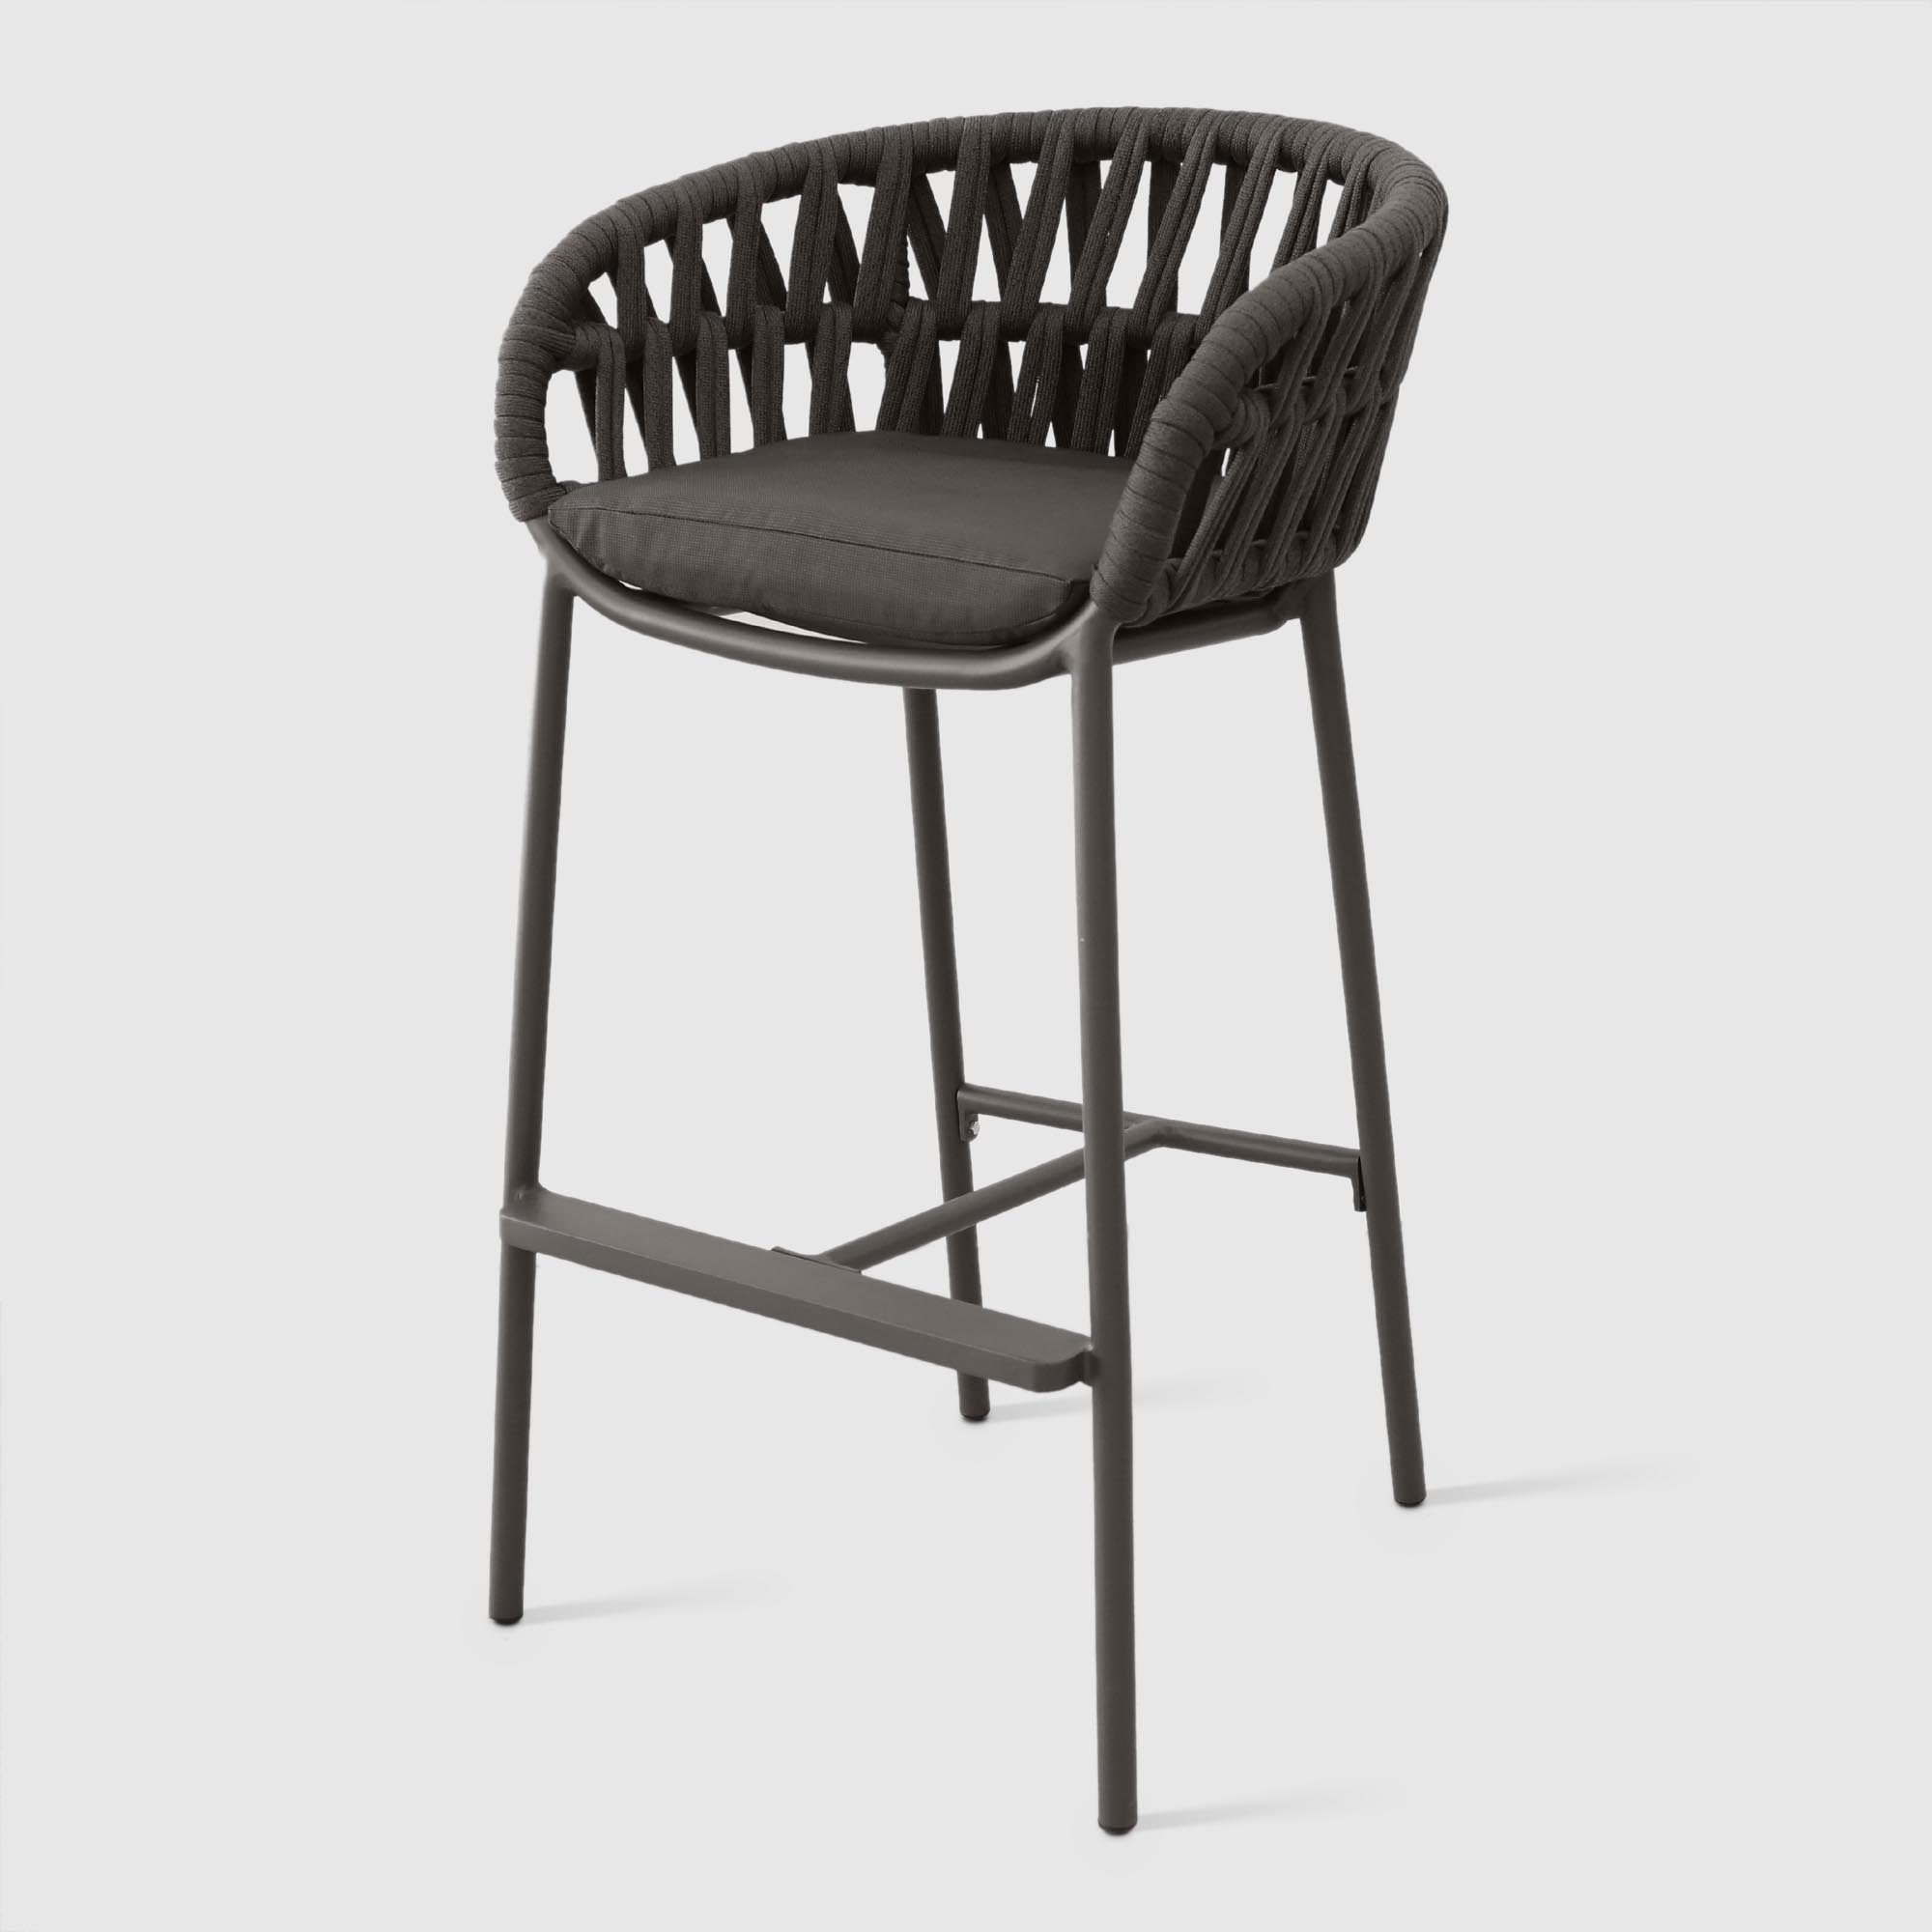 Барное кресло Drigani Drop антрацит с тёмно-коричневым 57х56х104 см, цвет тёмно-коричневый